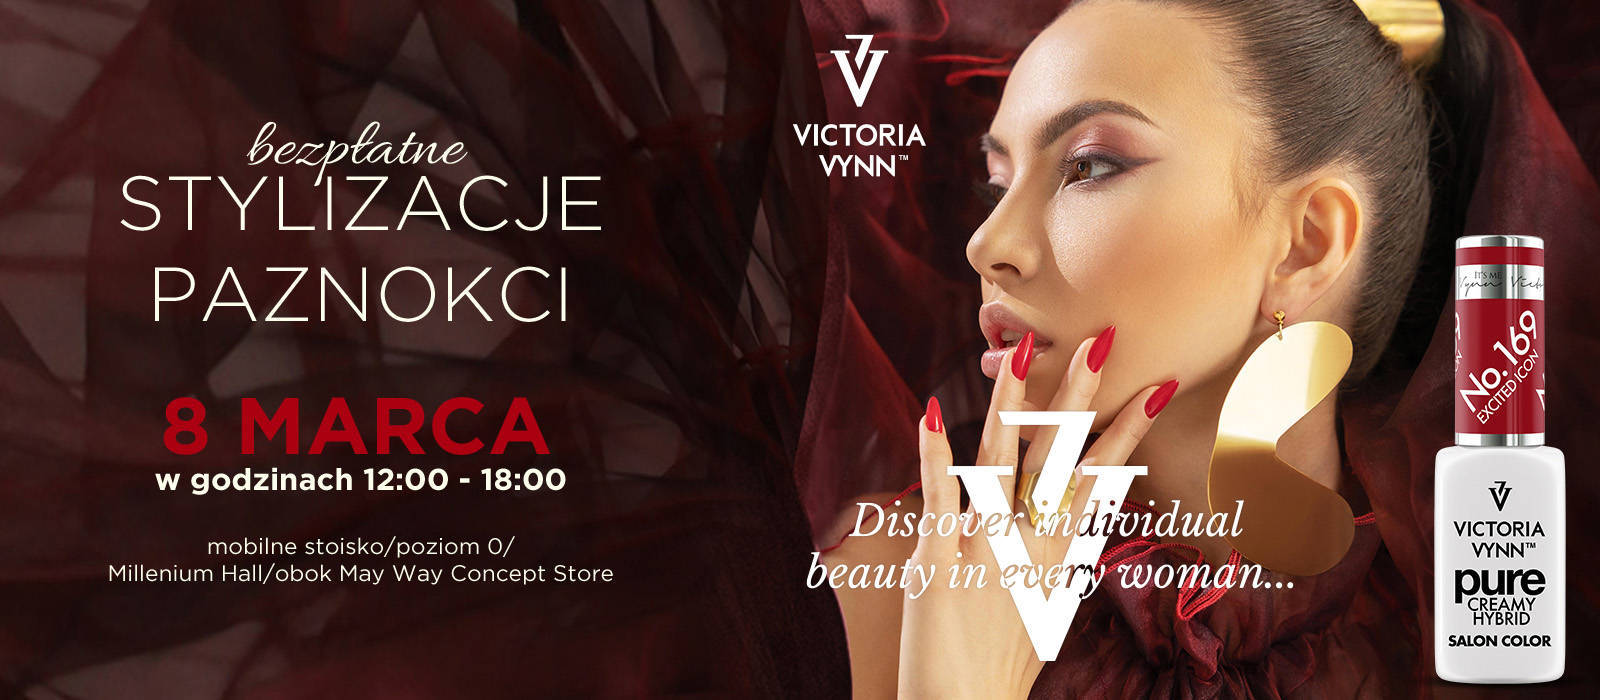 Bezpłatne stylizacje paznokci z okazji Dnia Kobiet z Victoria Vynn - 1